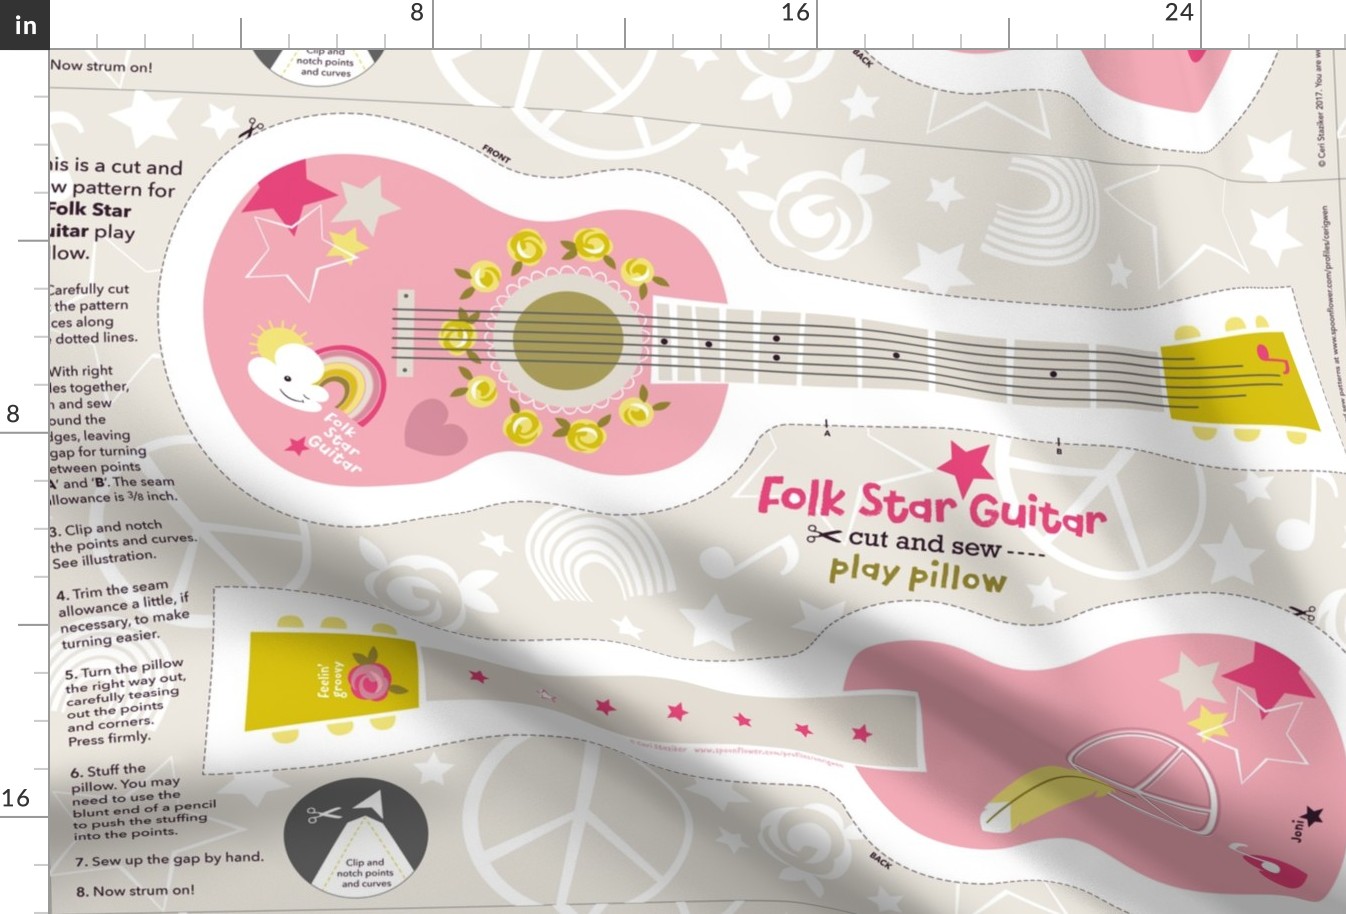 Folk Star Guitar play pillow